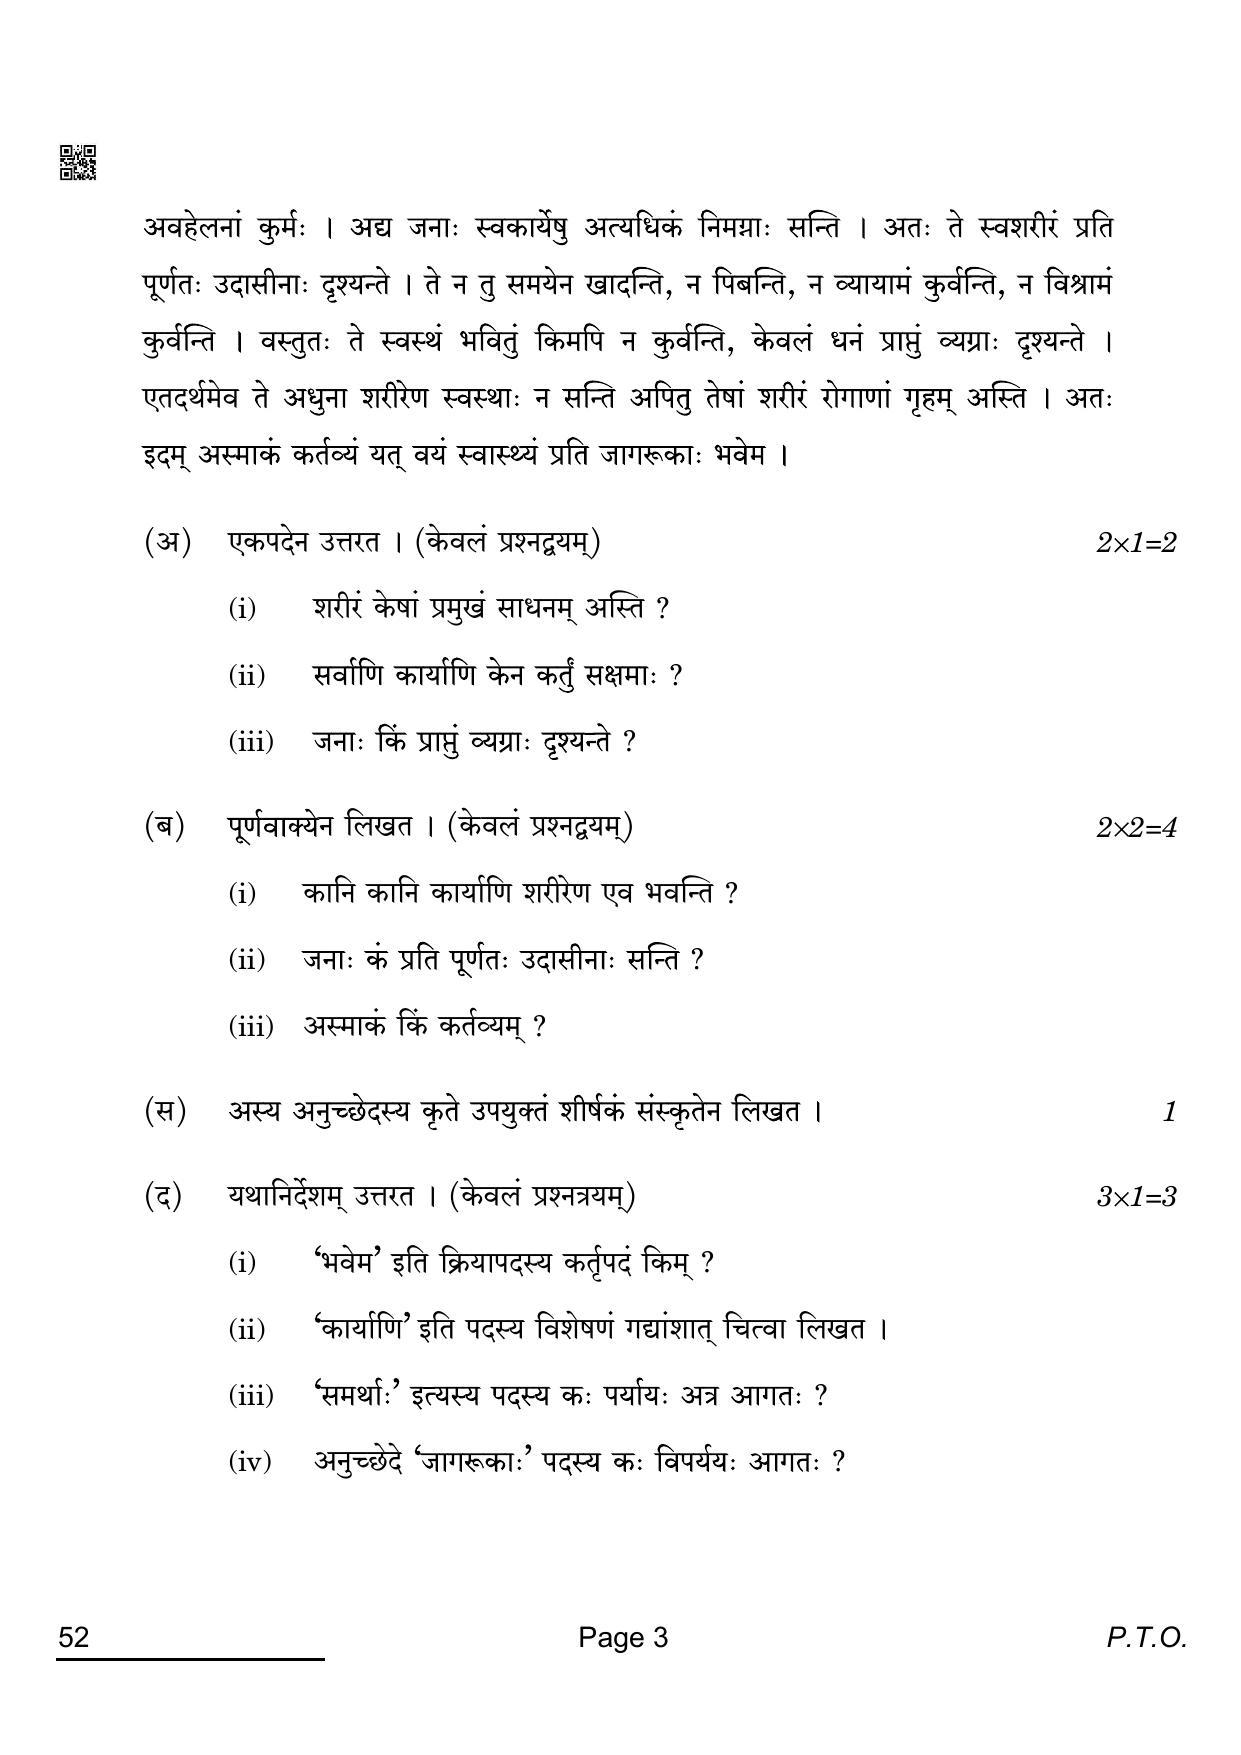 CBSE Class 10 52_Sanskrit 2022 Compartment Question Paper - Page 3